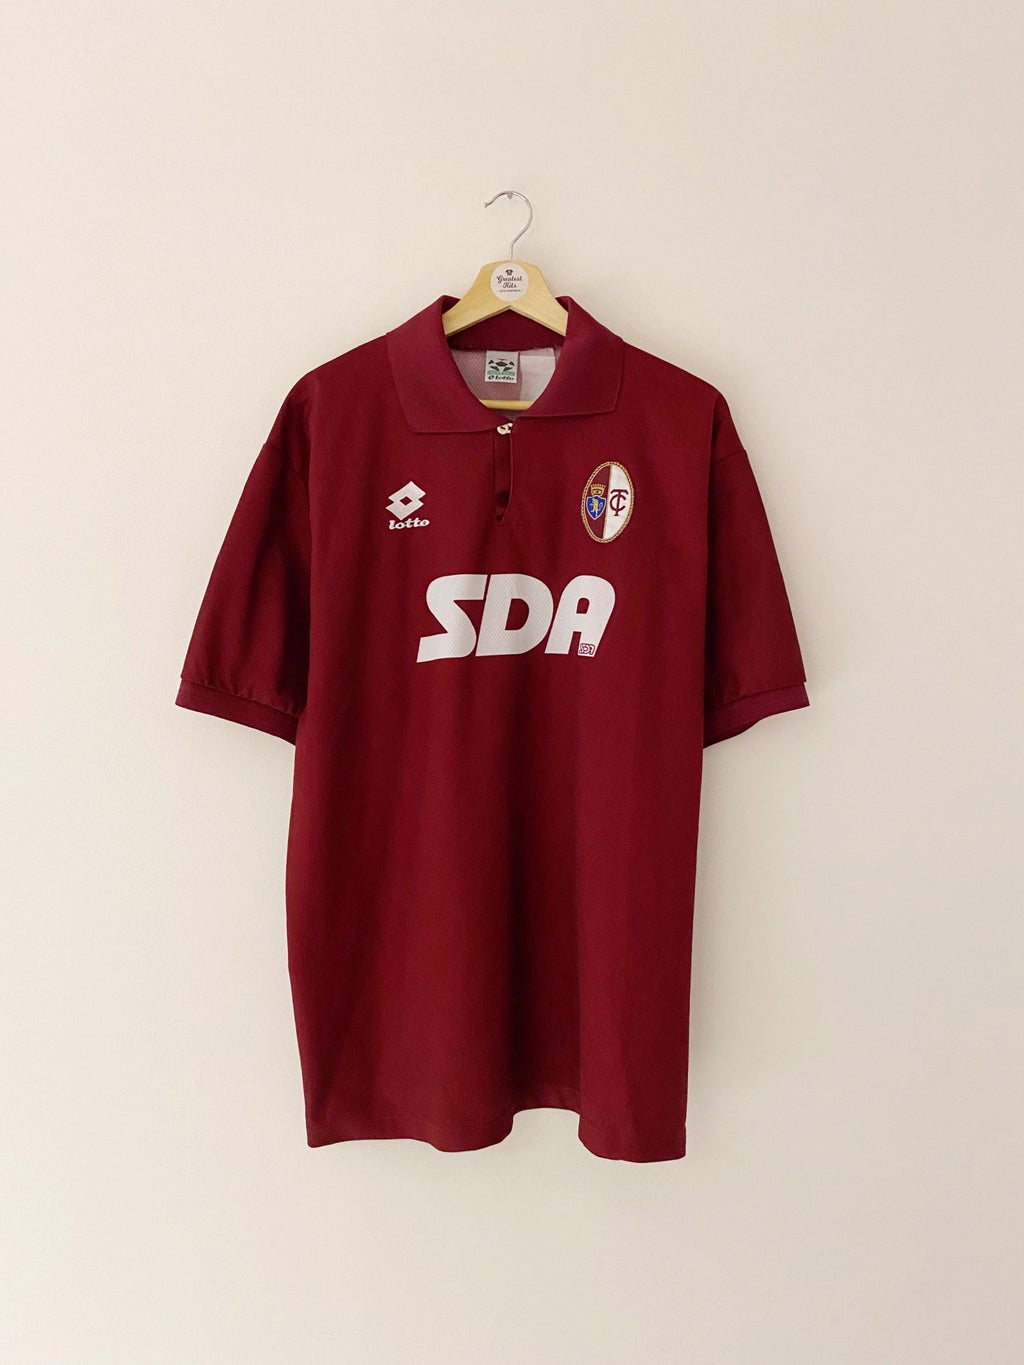 1995/96 Camiseta local del Torino (L) 9/10 